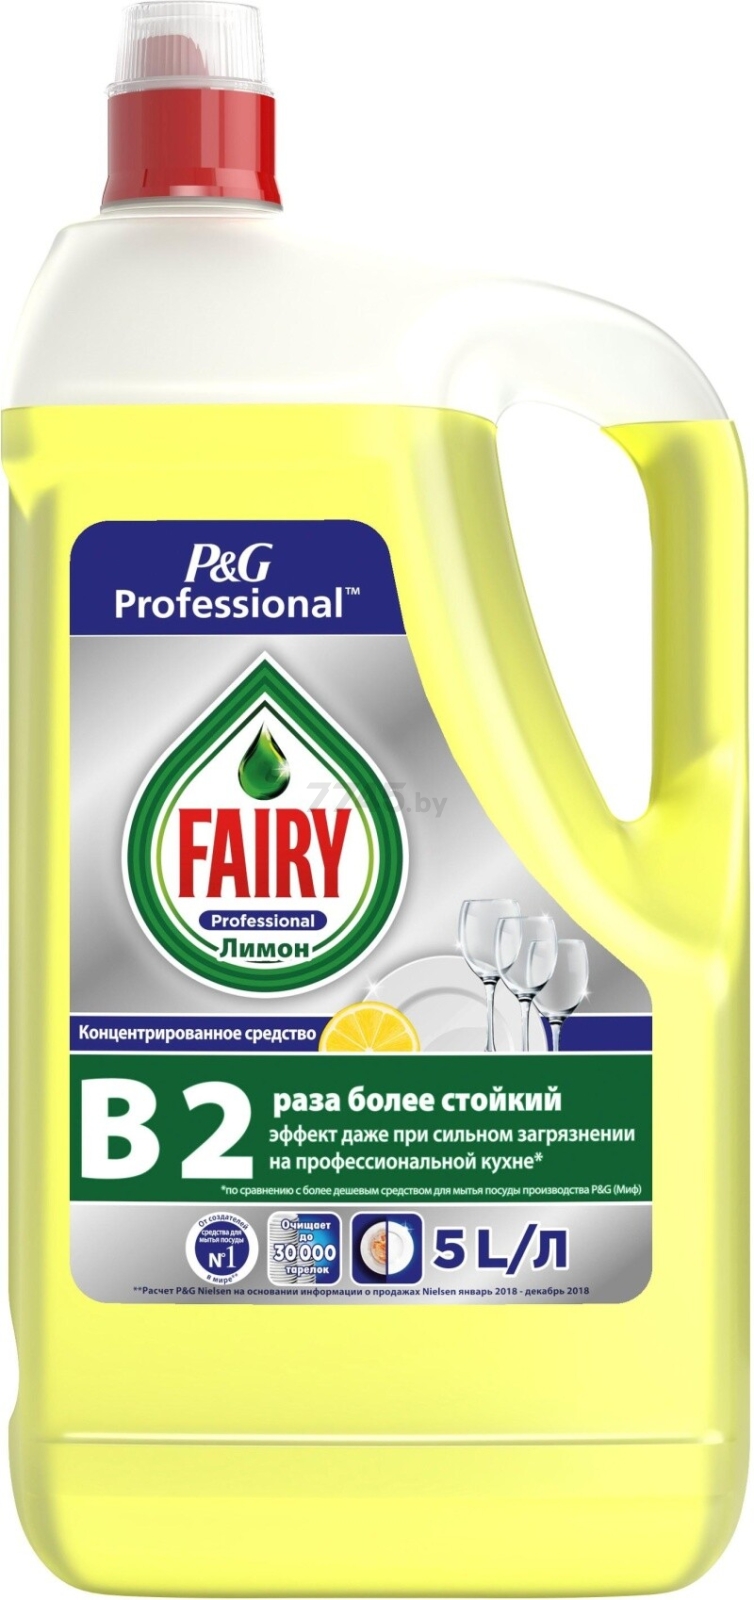 Средство для мытья посуды FAIRY Professional Сочный Лимон 5 л (8001090424747)